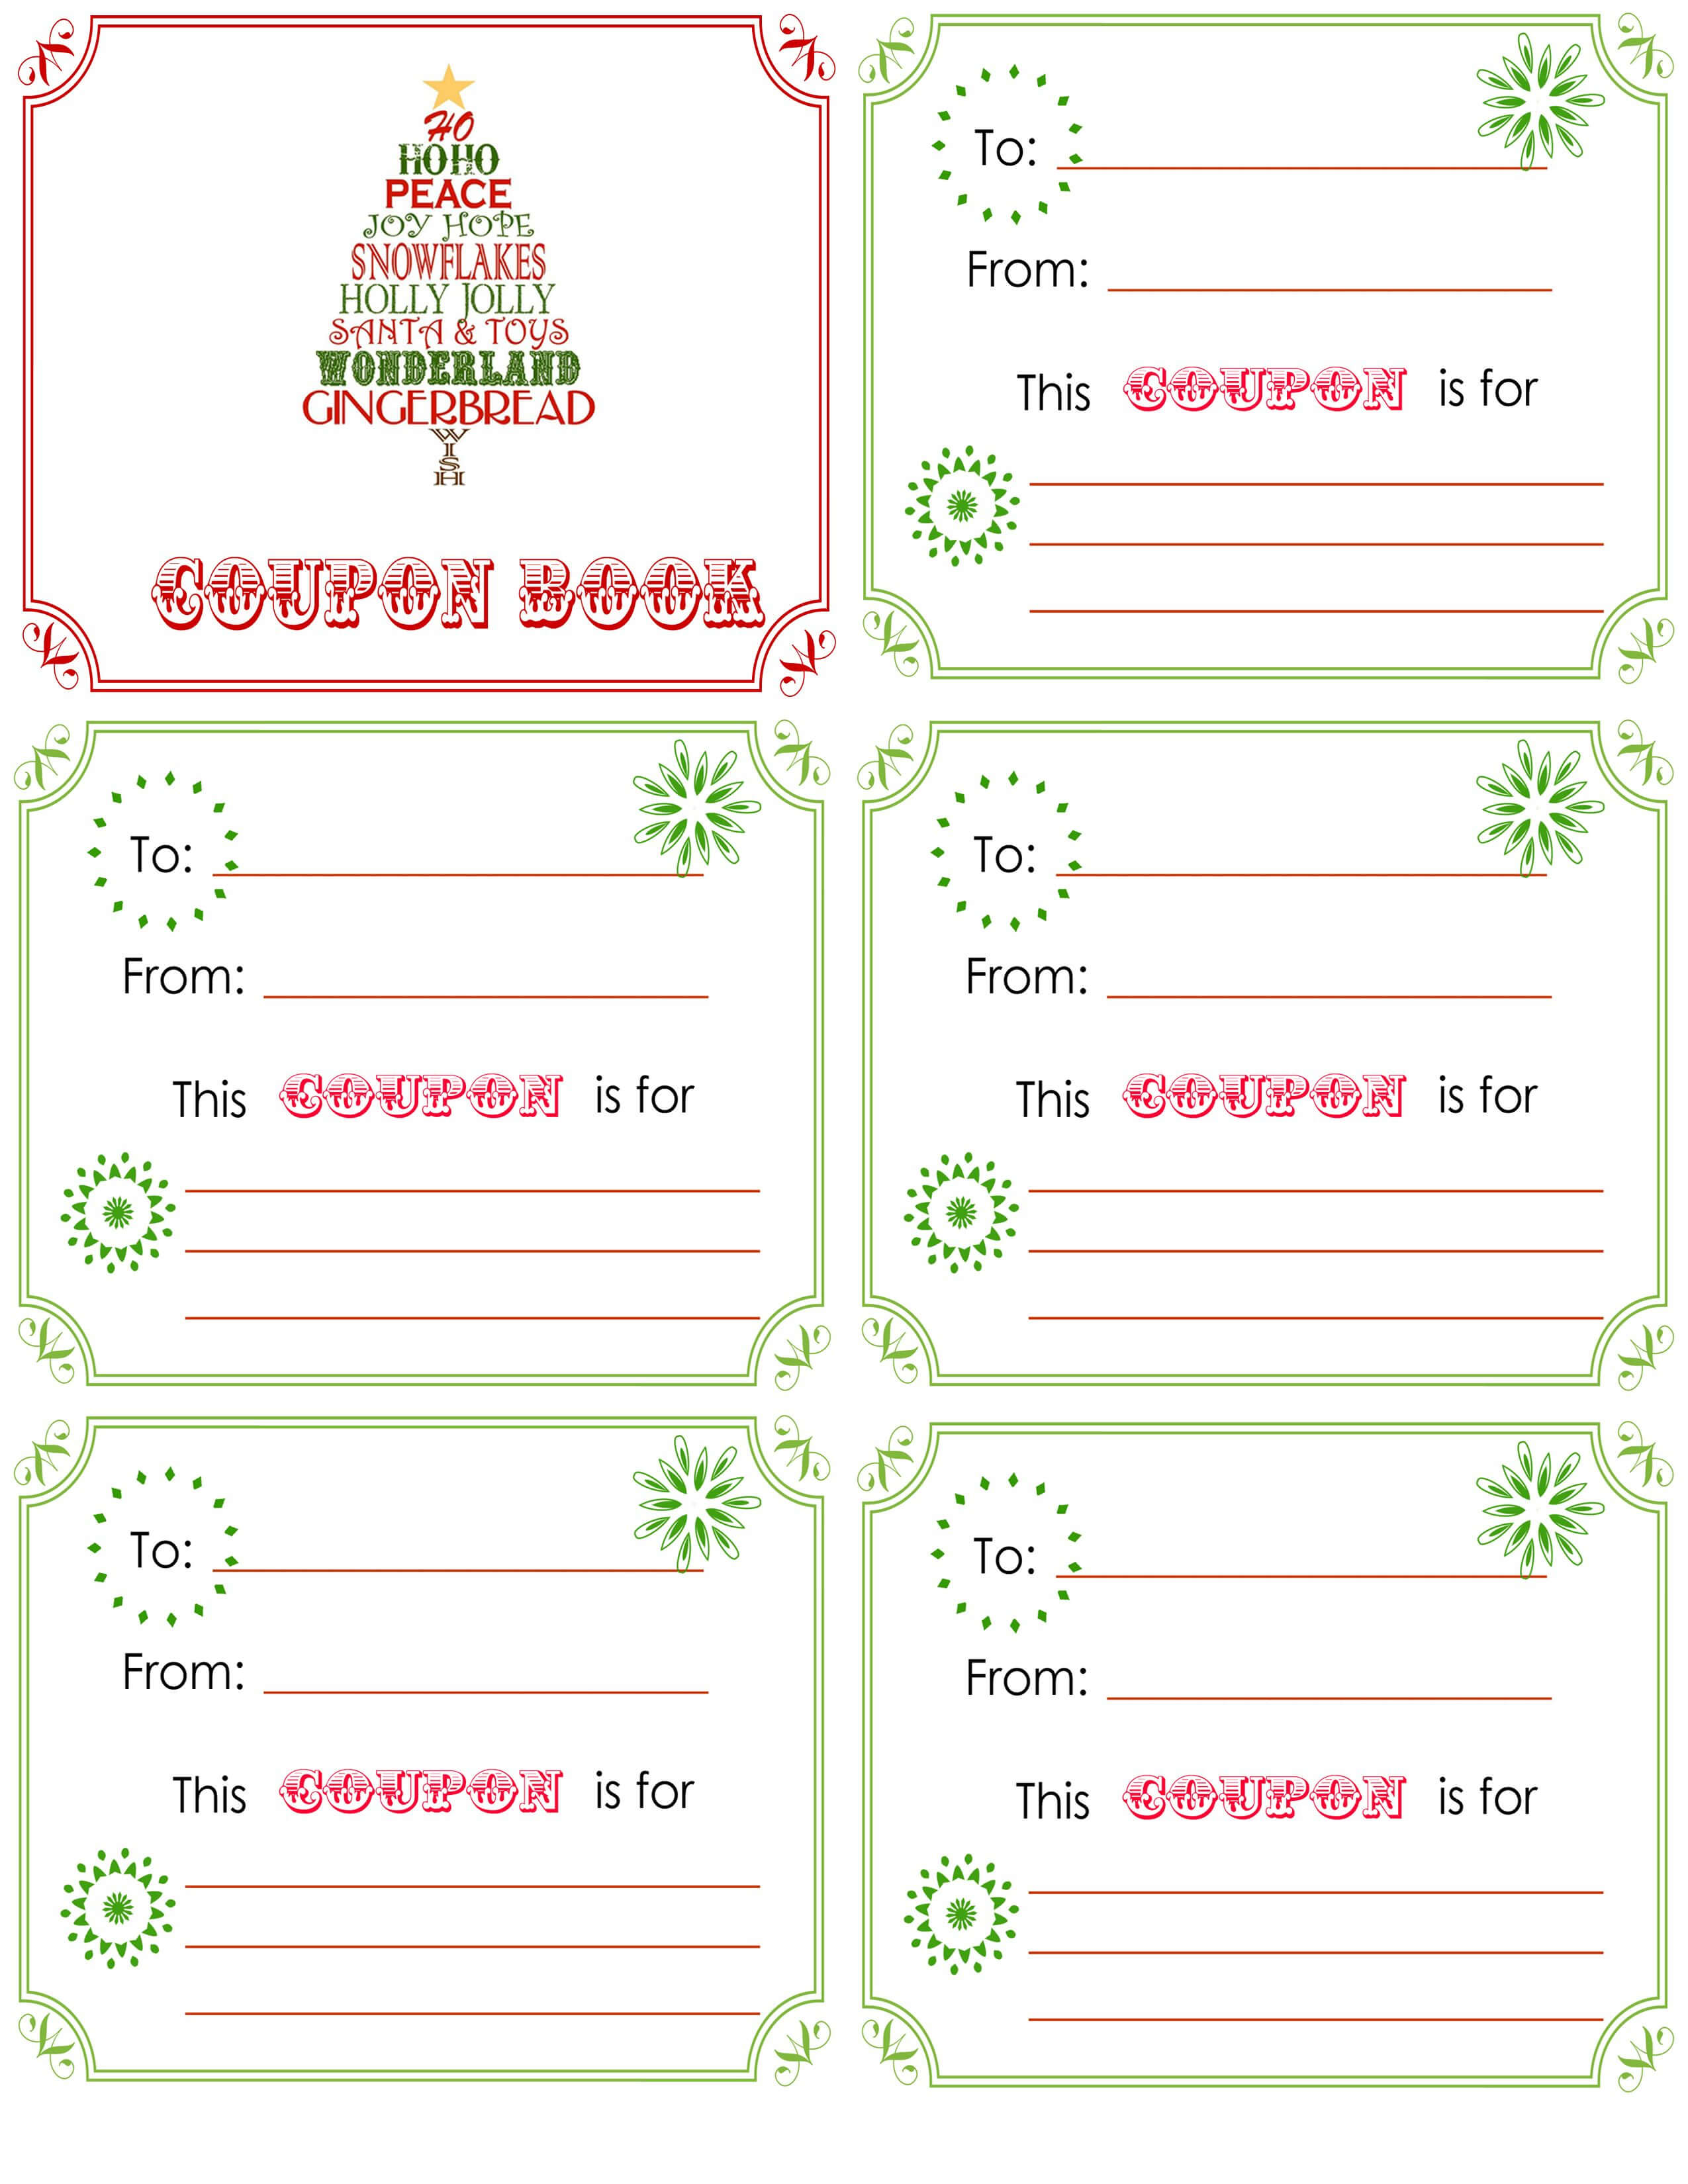 Printable+Christmas+Coupon+Book+Template | Christmas Card Inside Blank Coupon Template Printable